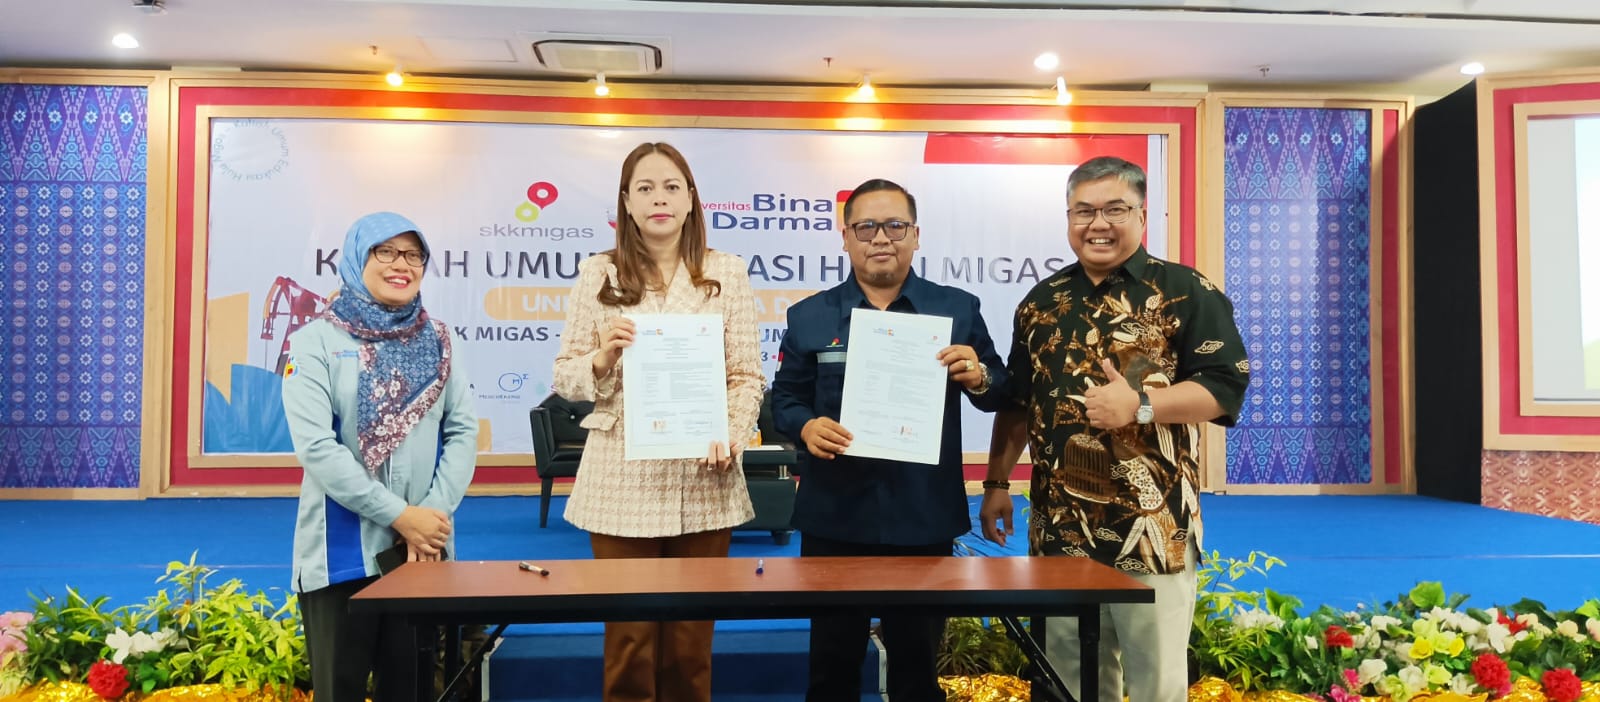 Selain Kuliah Umum, UBD Palembang dan SKK Migas Teken Kerjasama Bersinergi Soal Edukasi Hulu Migas